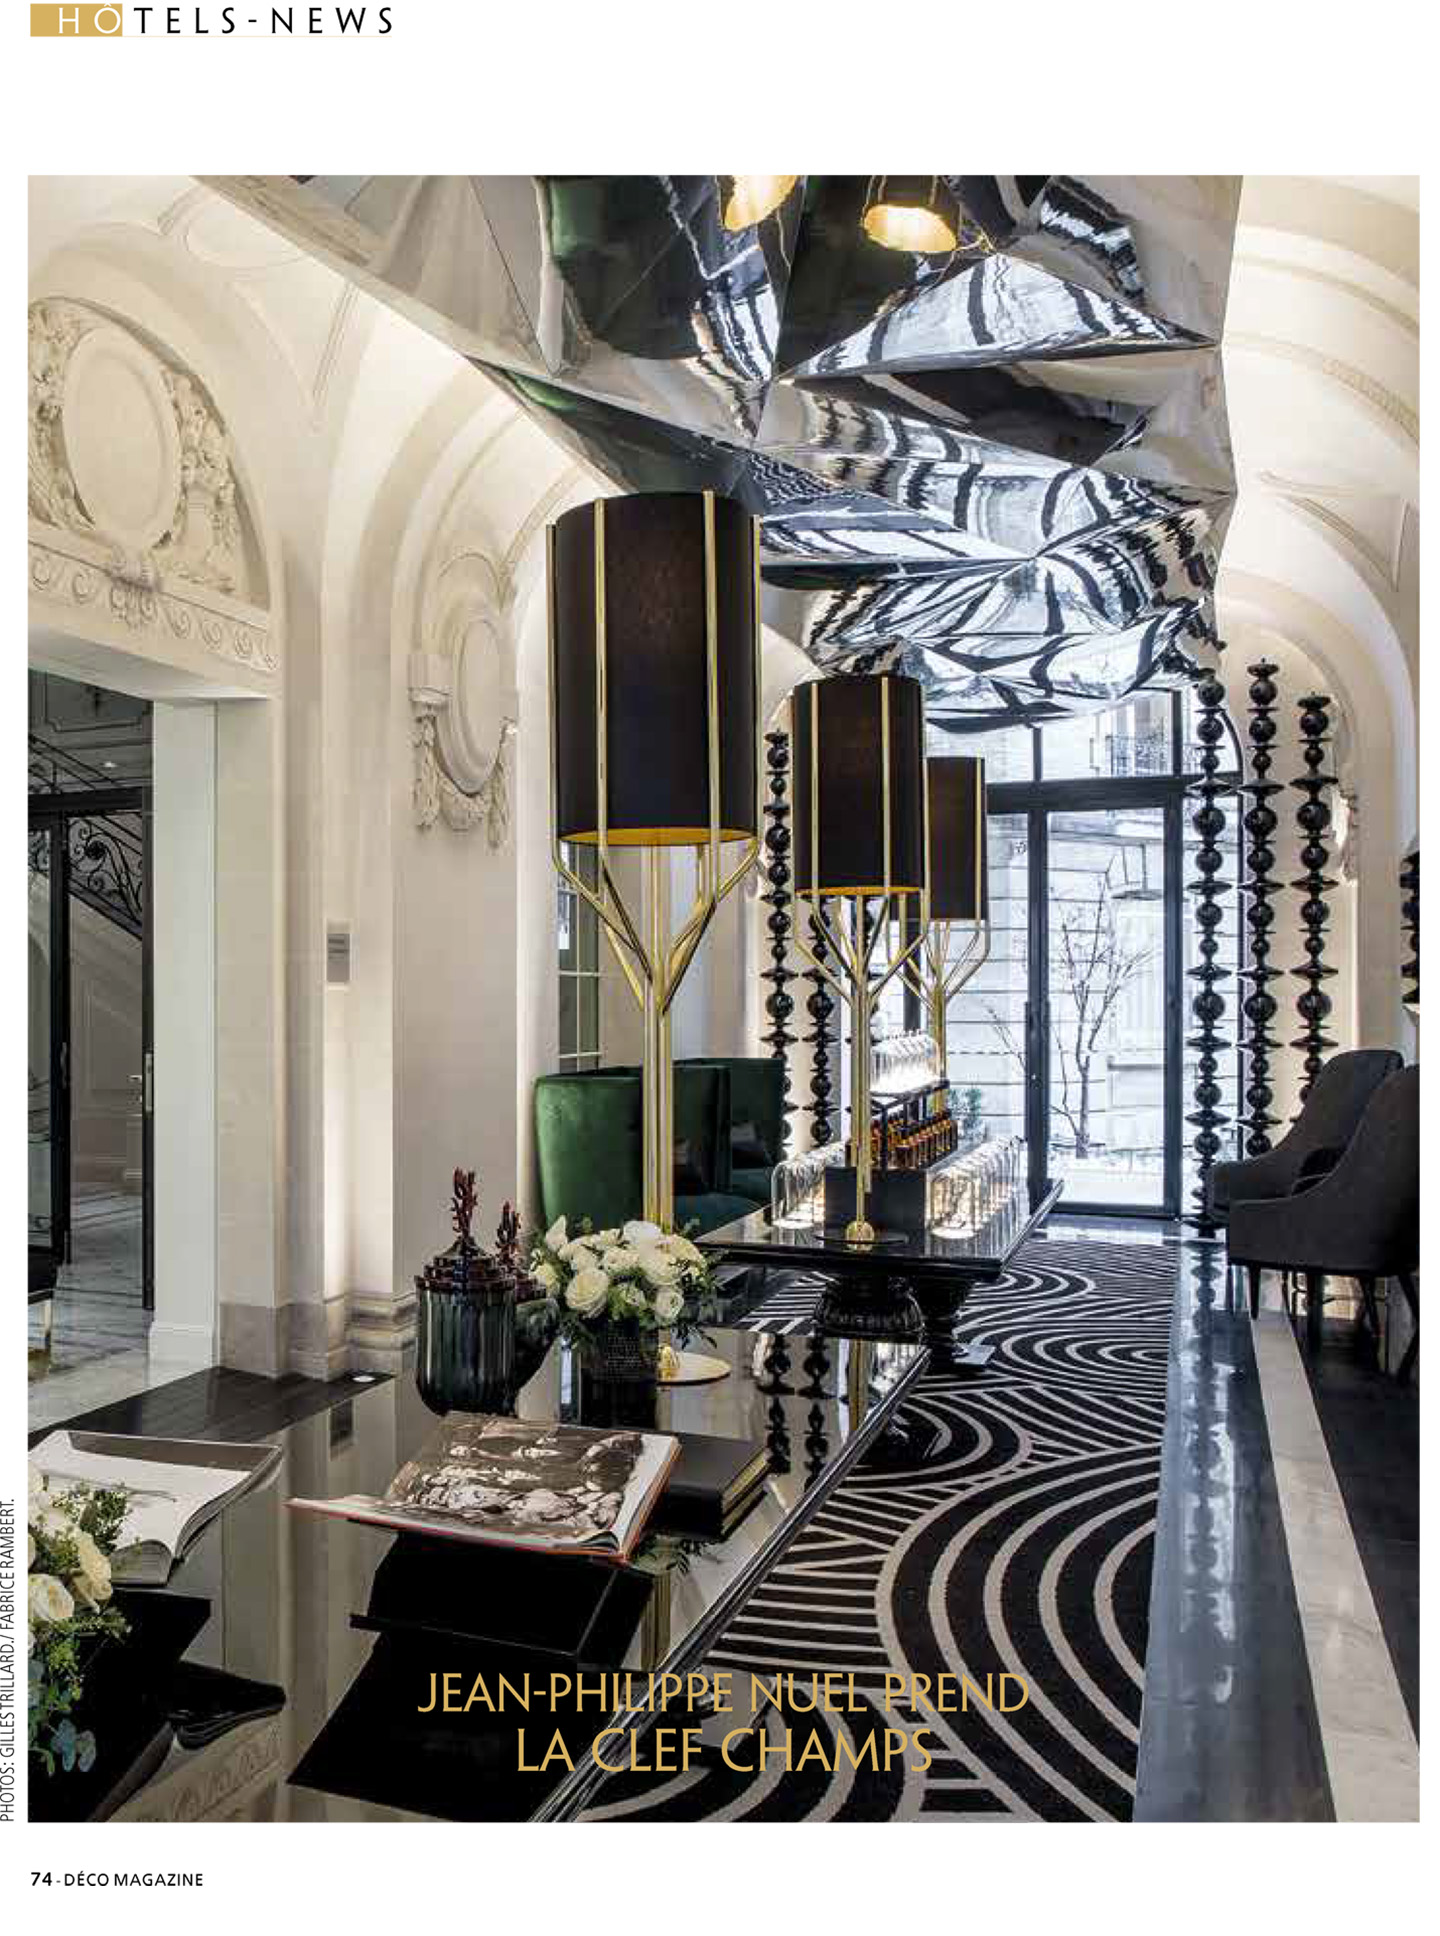 Article sur La Clef Champs-Elysées Paris réalisé par le studio jean-Philippe Nuel dans le magazine déco Magzine, nouvel hotel de luxe, architecture d'intérieur de luxe, hôtel parisien